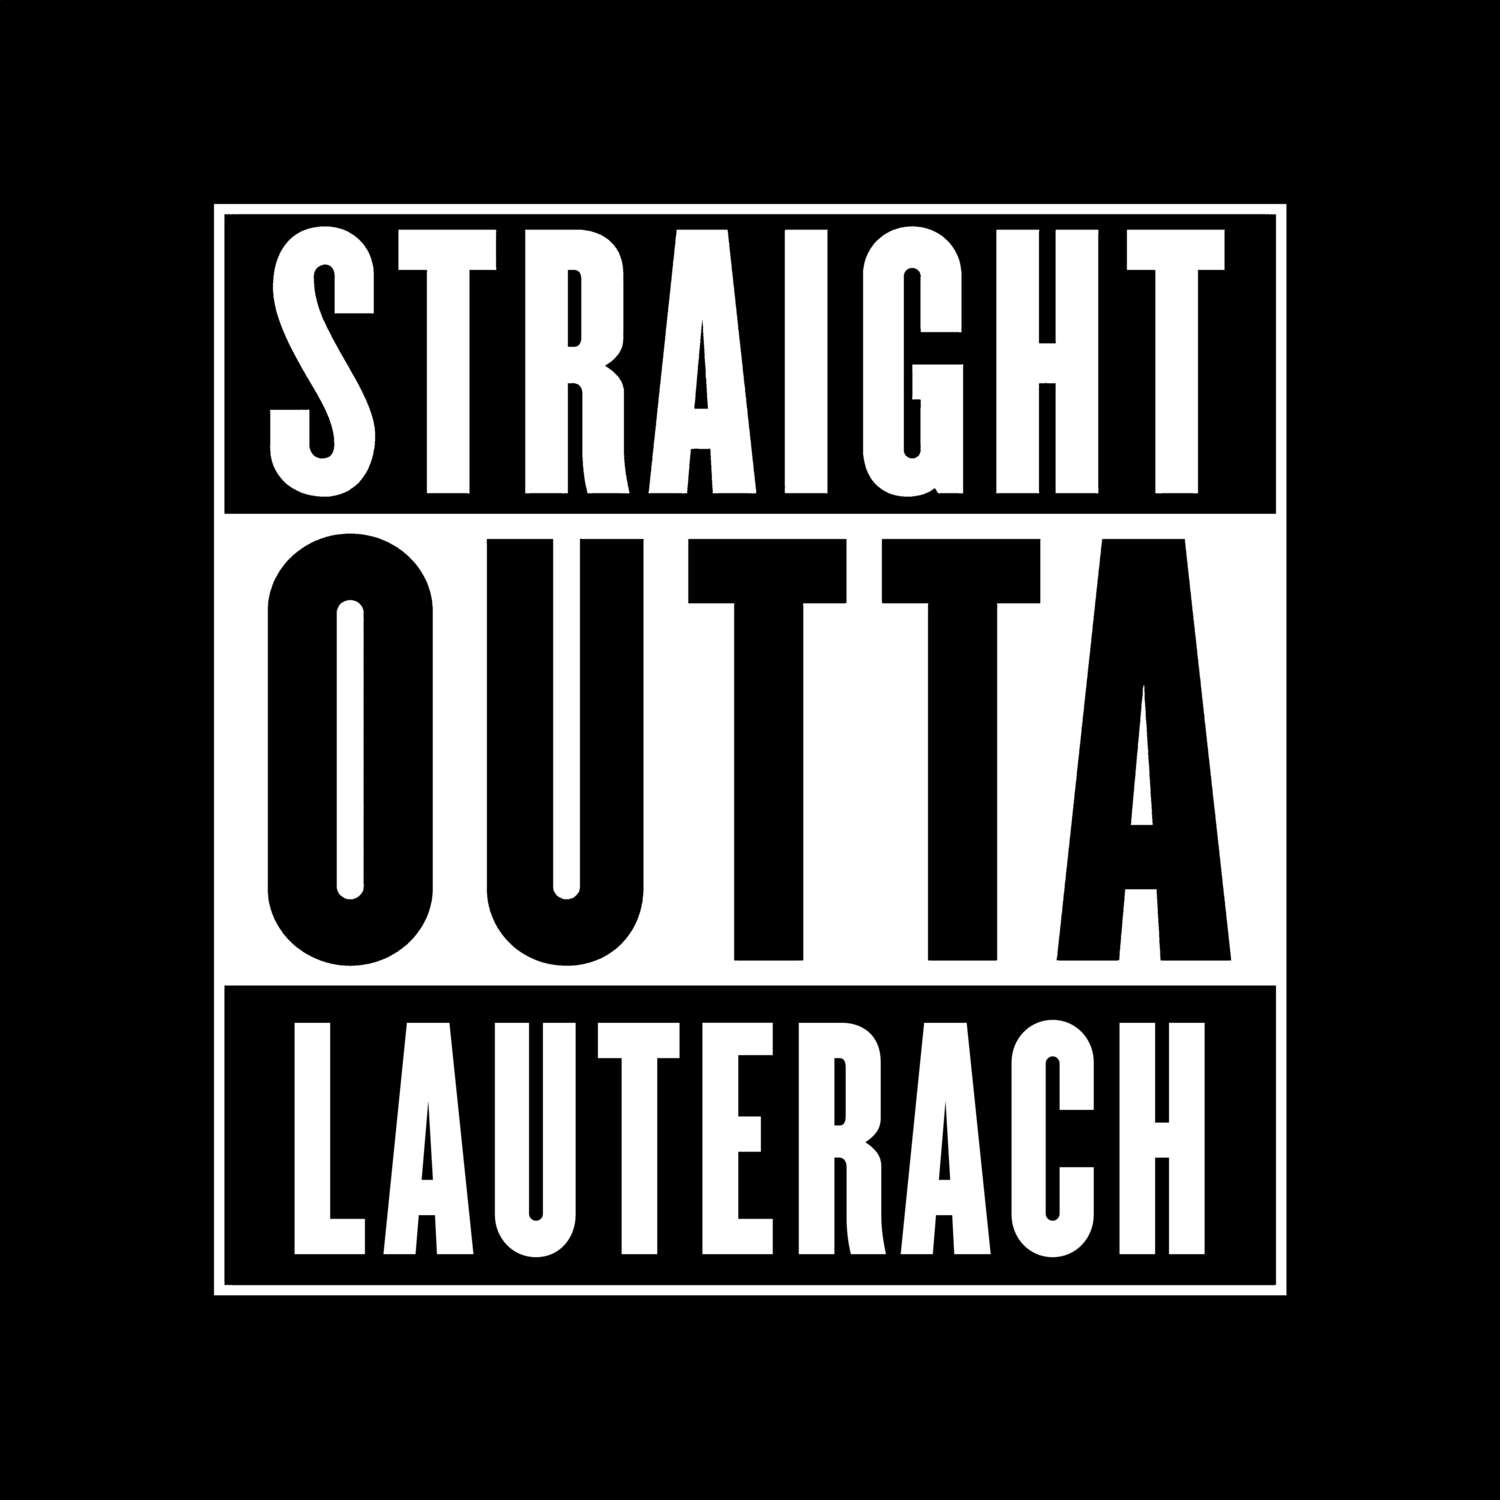 Lauterach T-Shirt »Straight Outta«